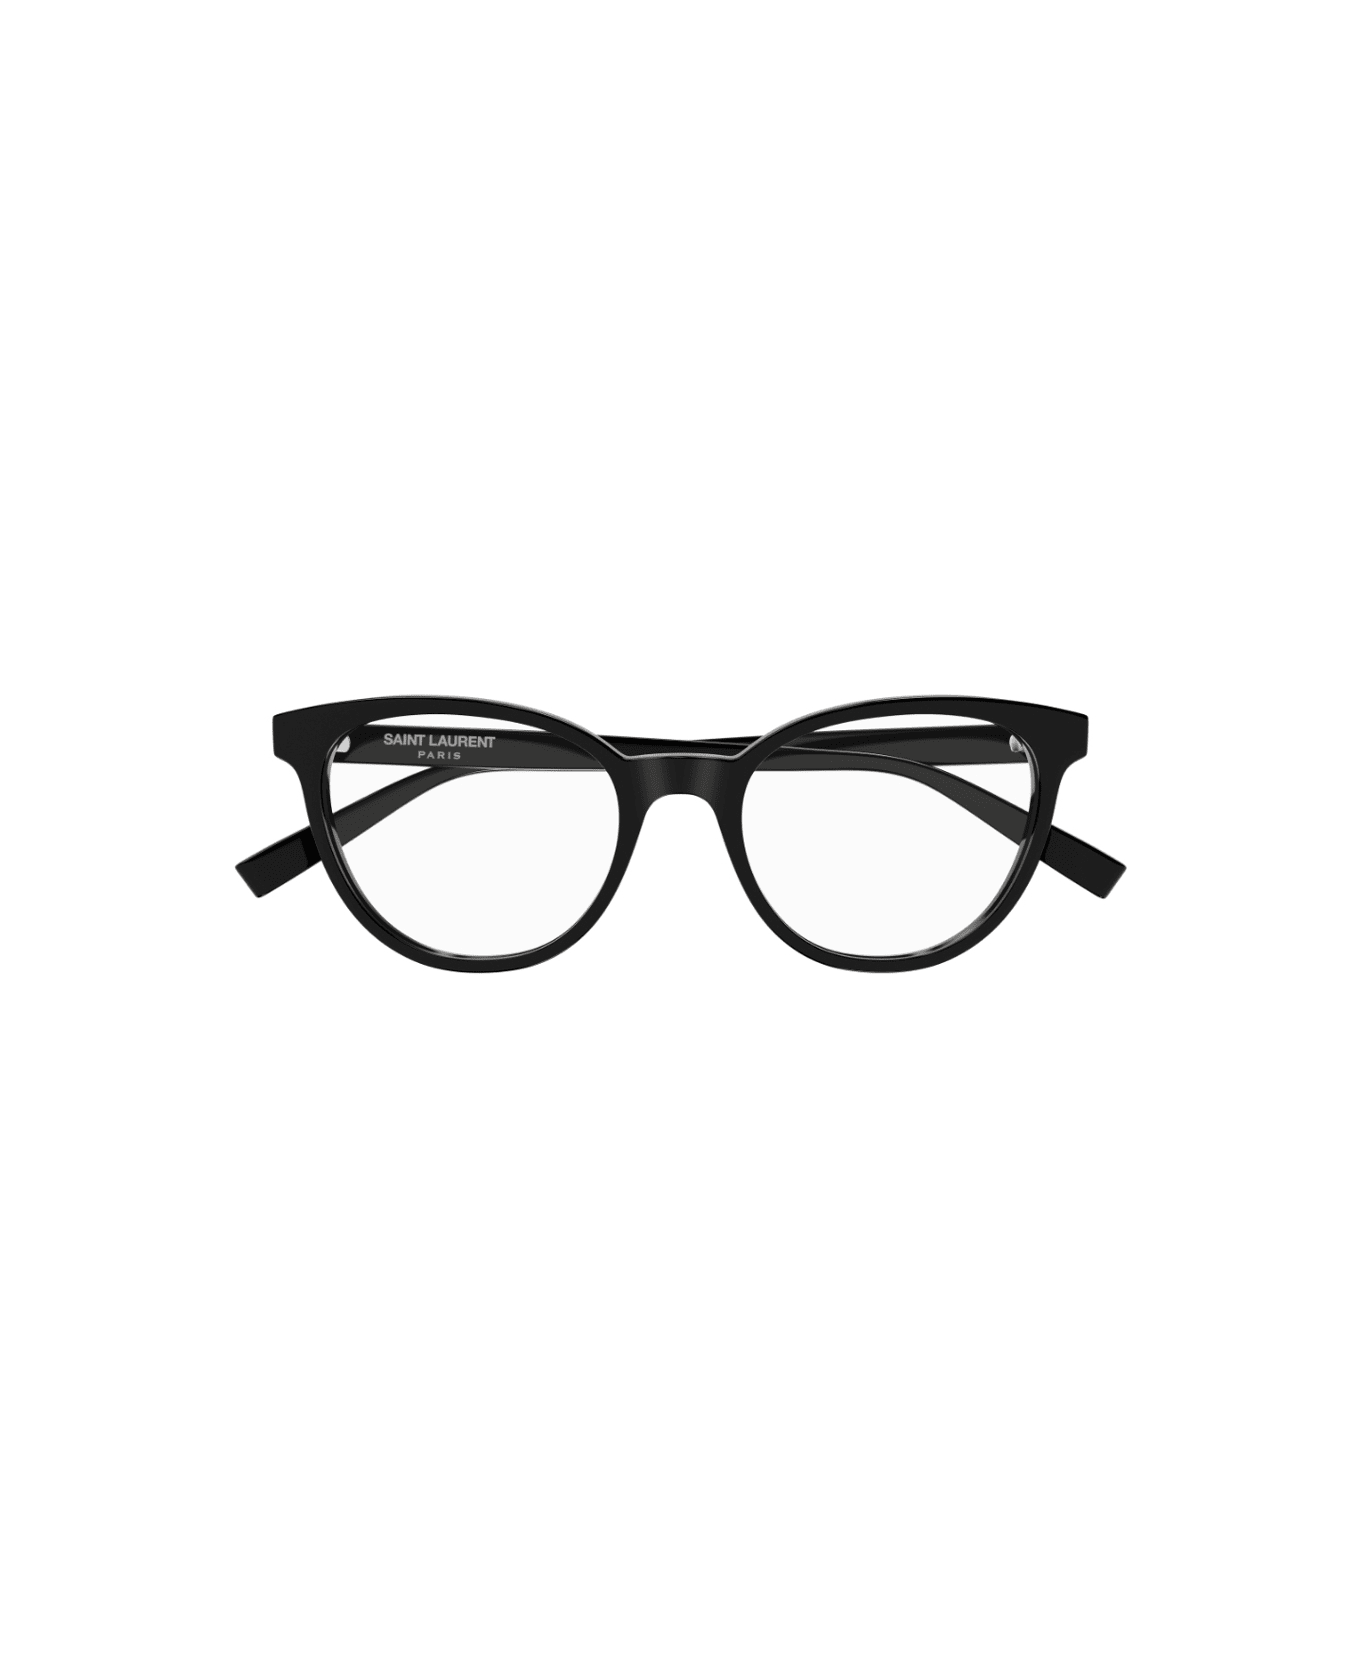 Saint Laurent Eyewear SL 589 001 Glasses アイウェア